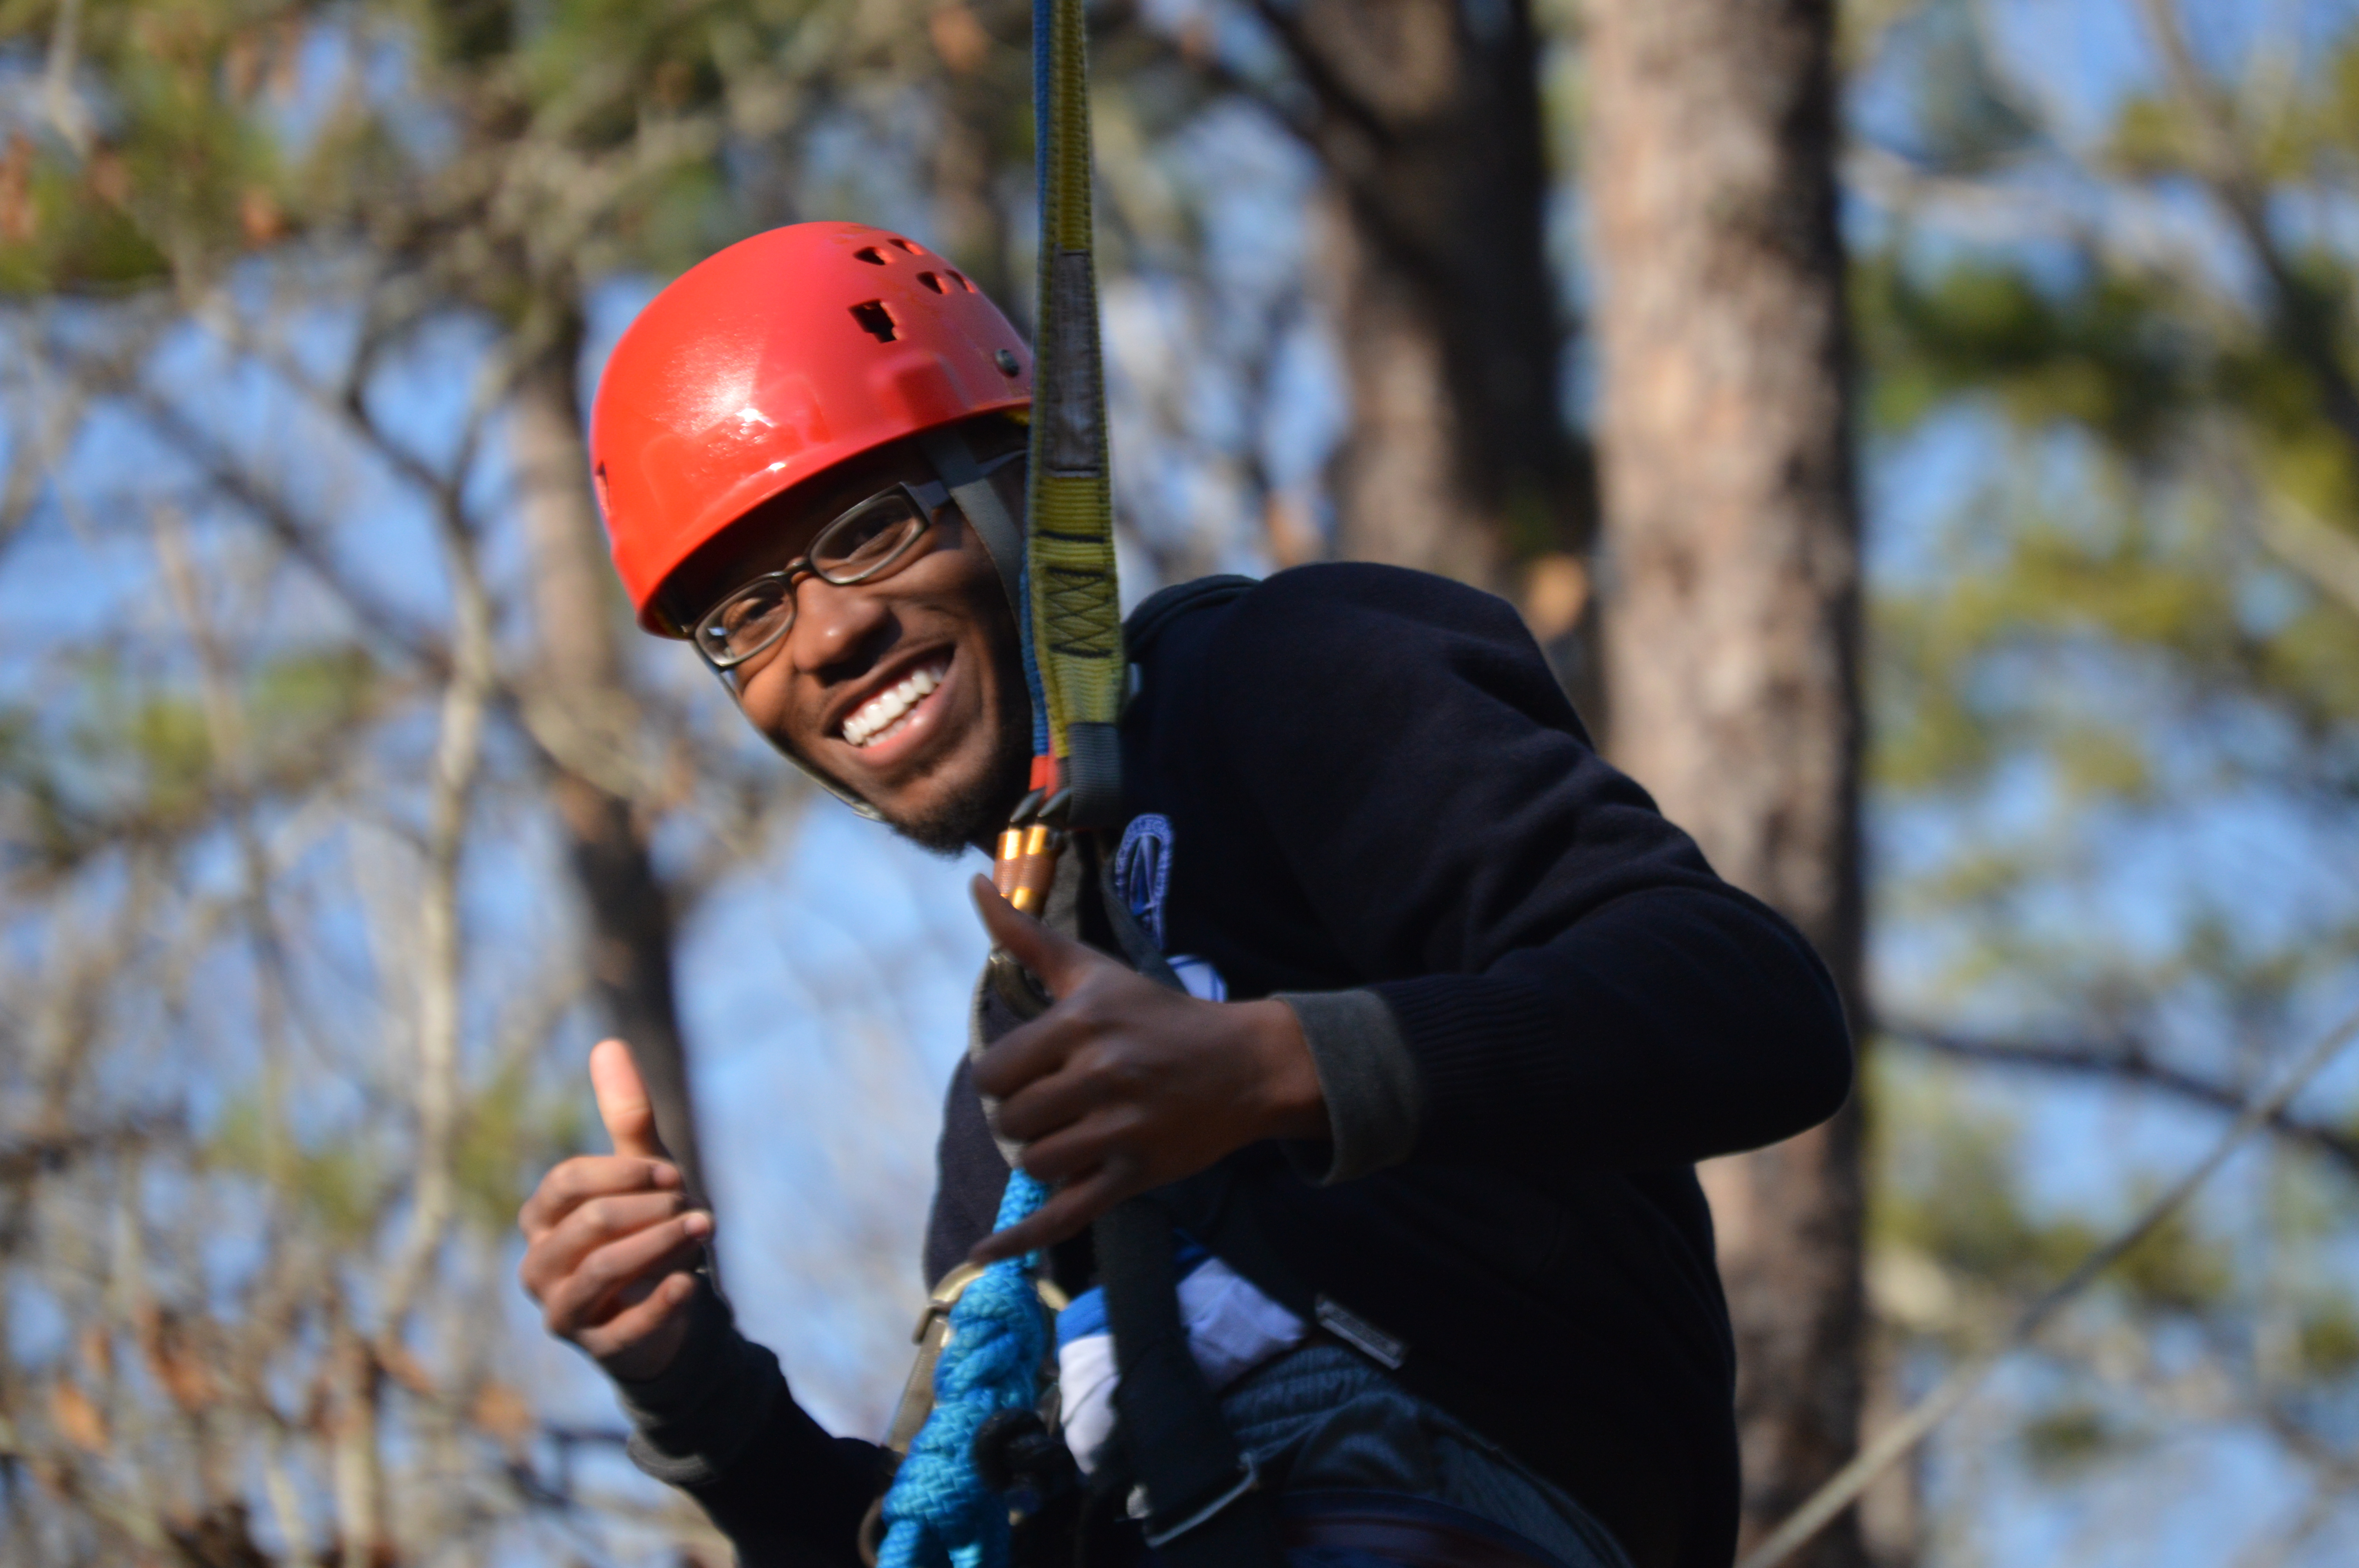 Participant smiling riding zipline